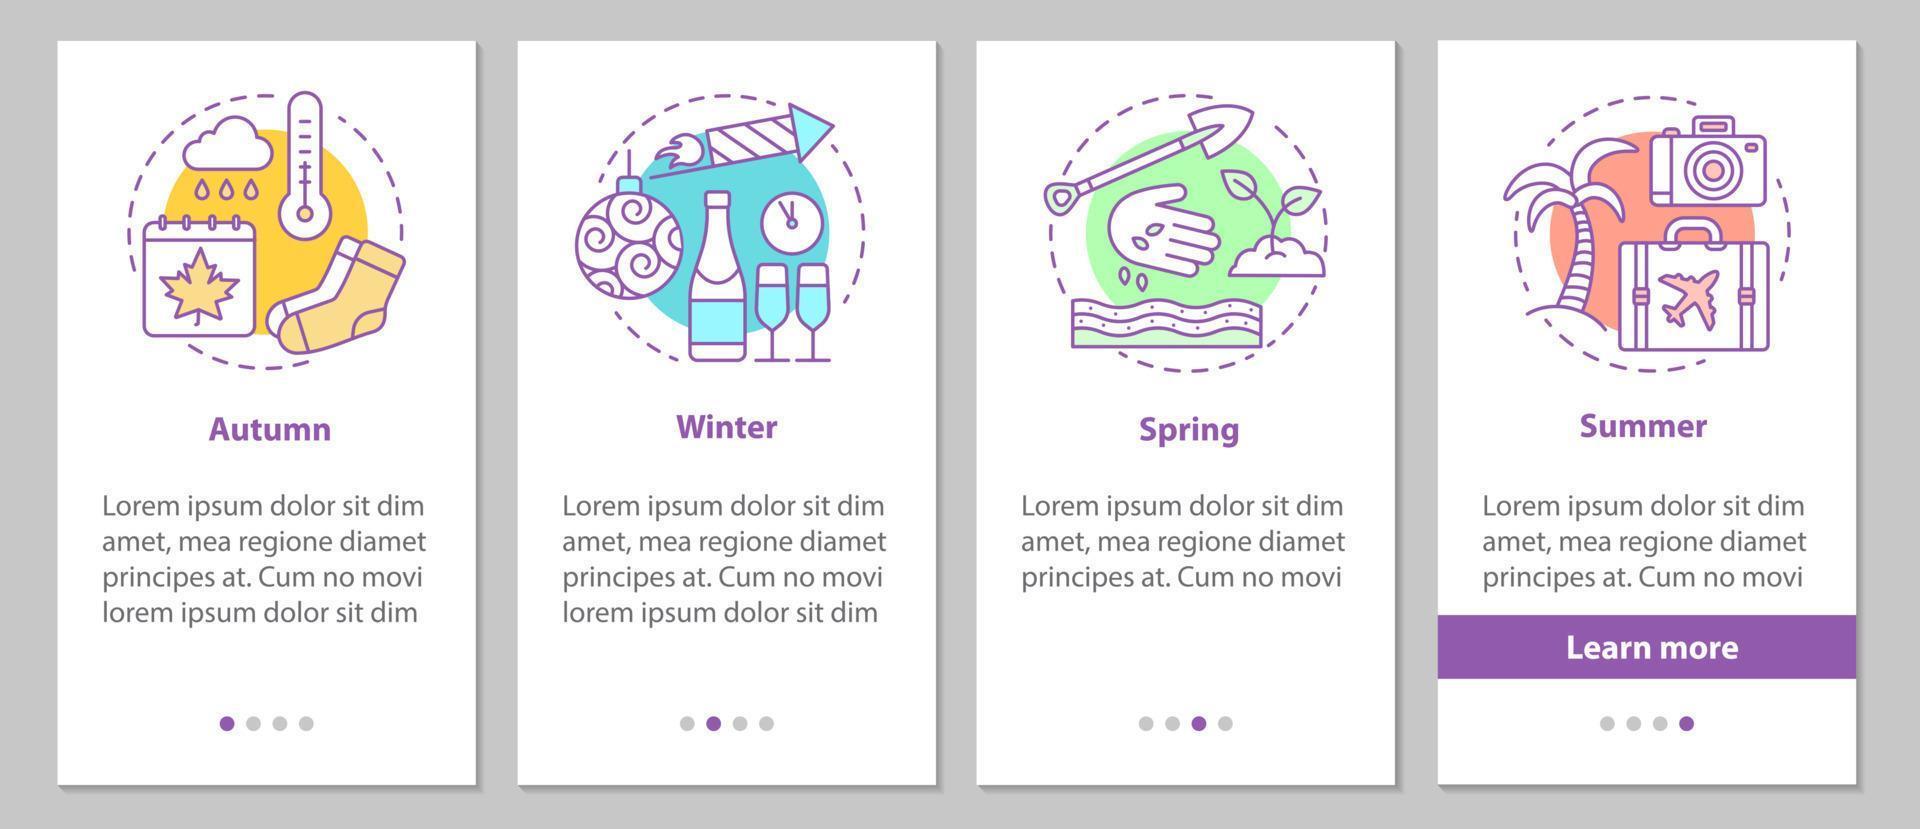 écran de page d'application mobile d'intégration quatre saisons avec des concepts linéaires. instructions graphiques des étapes d'hiver, d'automne, de printemps et d'été. ux, ui, modèle vectoriel gui avec illustrations